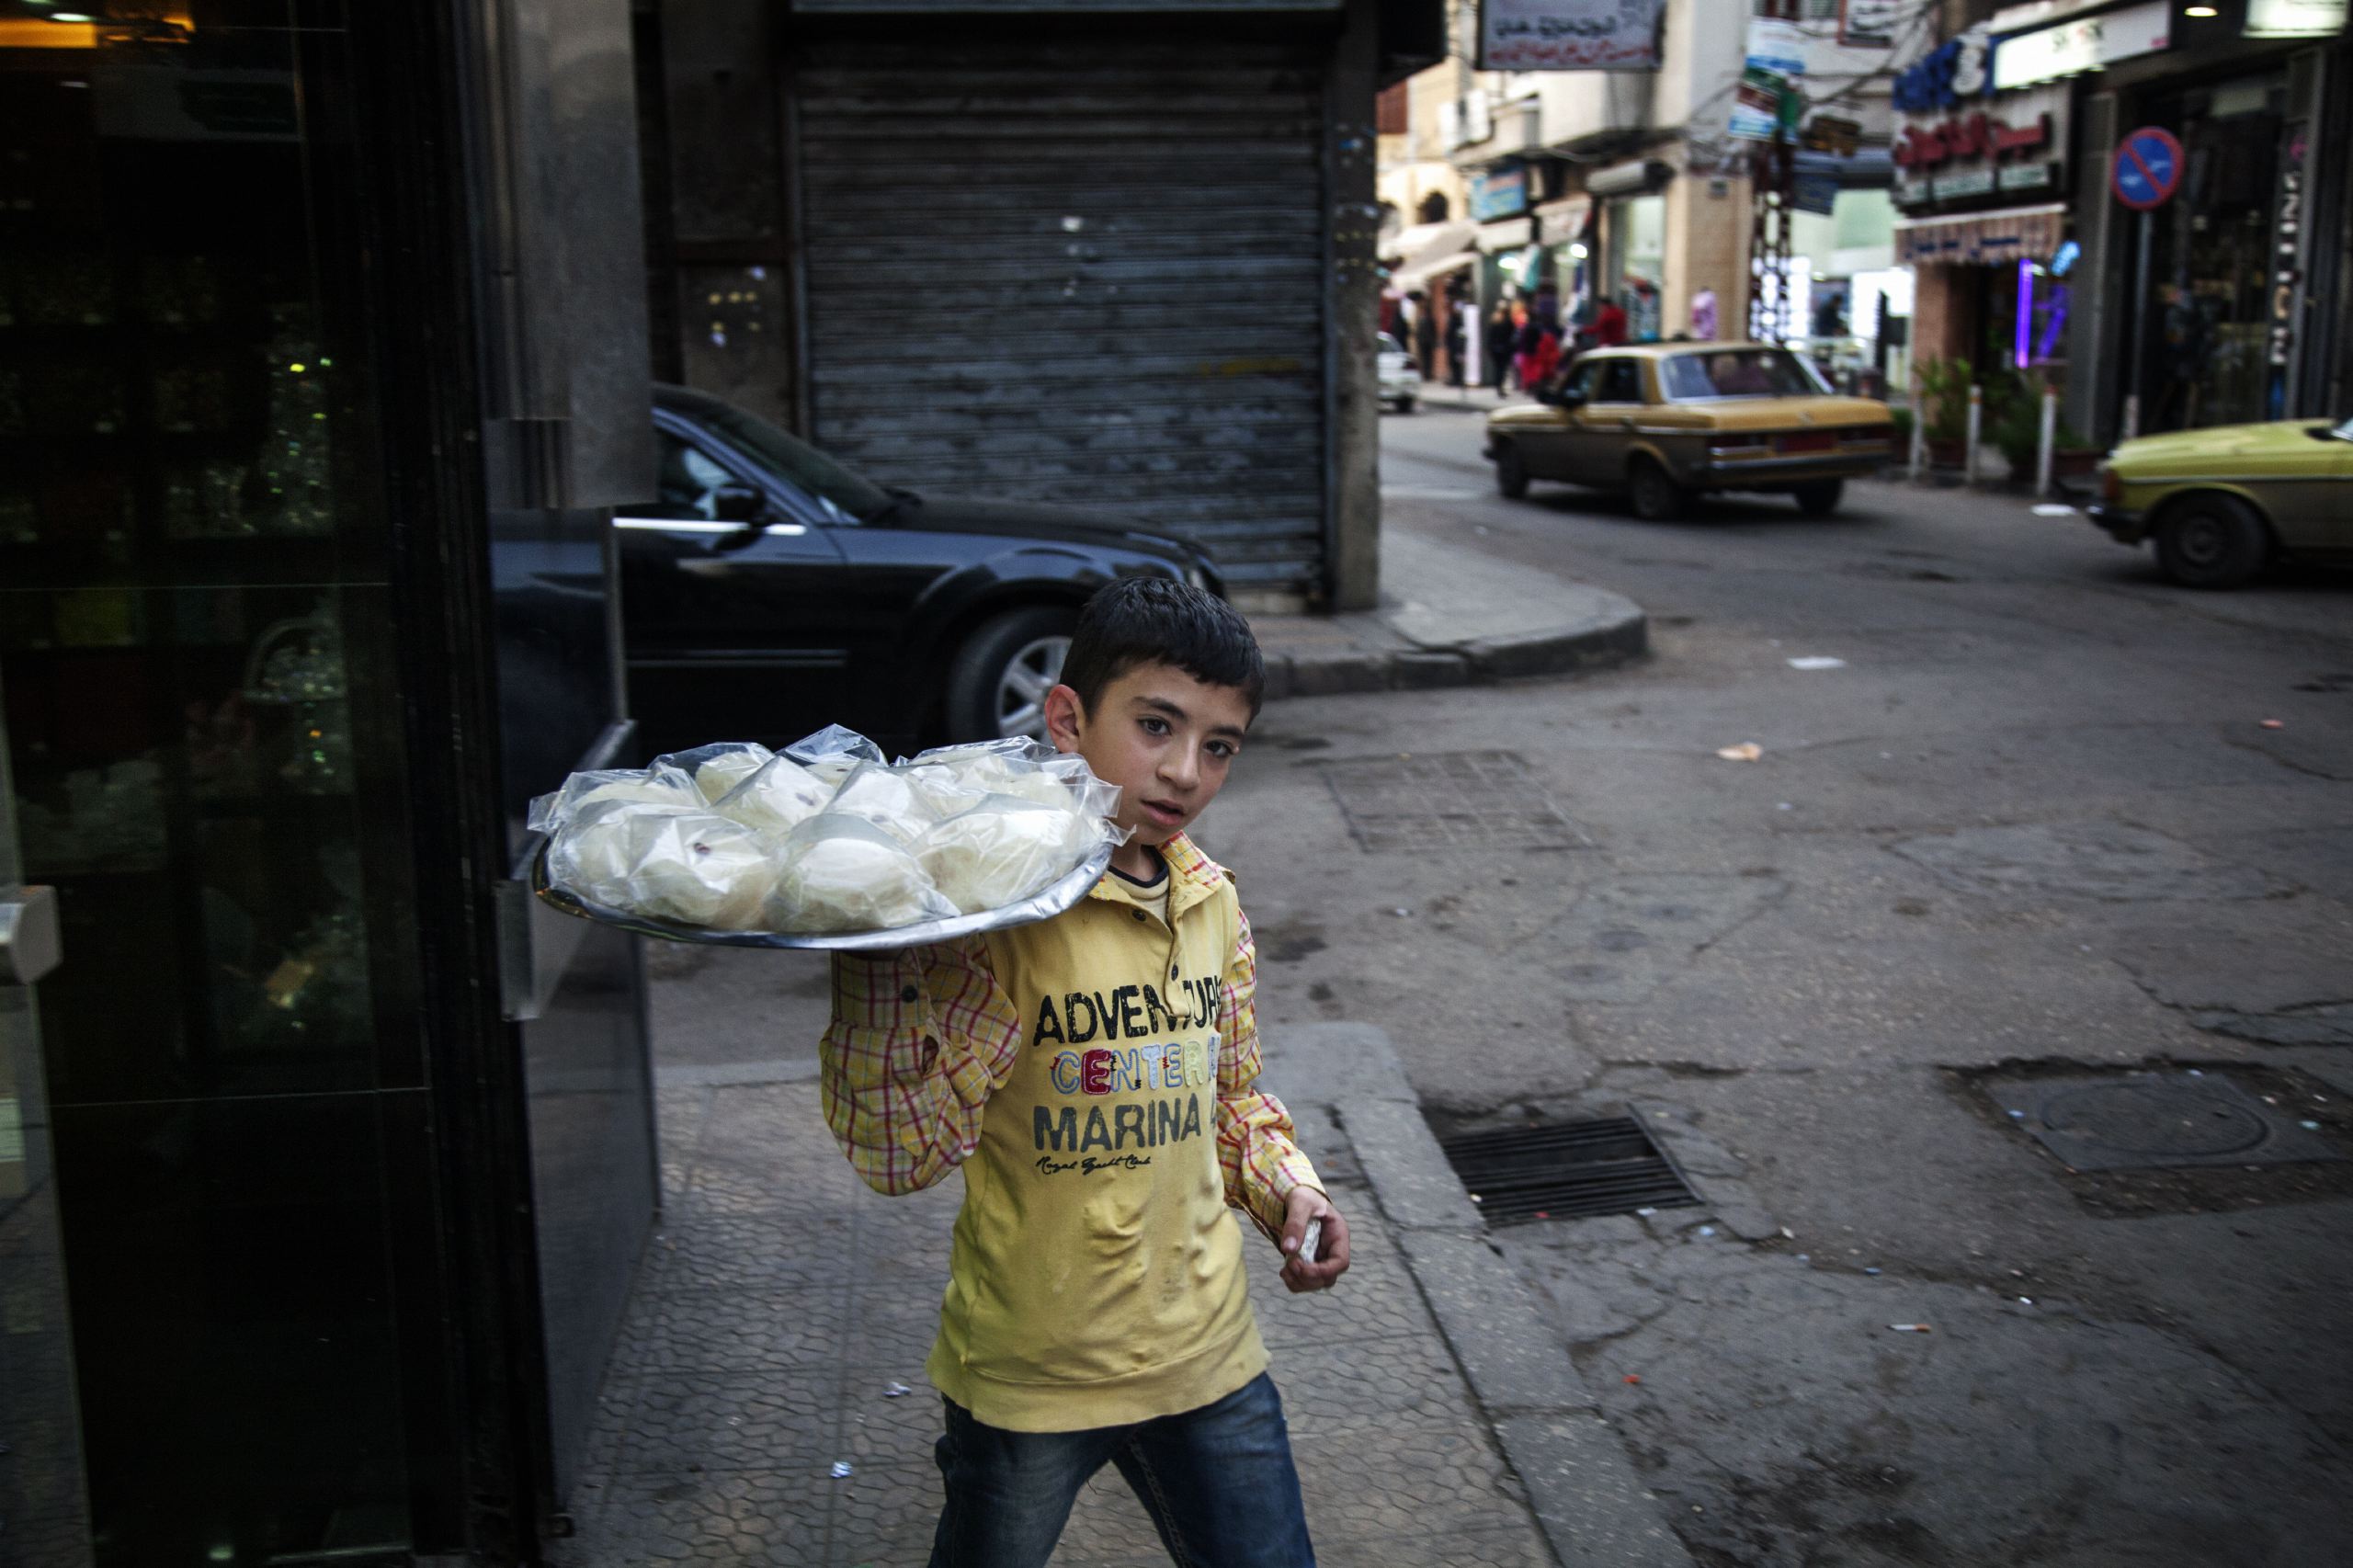 Child labor is widespread in the city of Tripoli, Lebanon, Nov. and Dec. 2014.